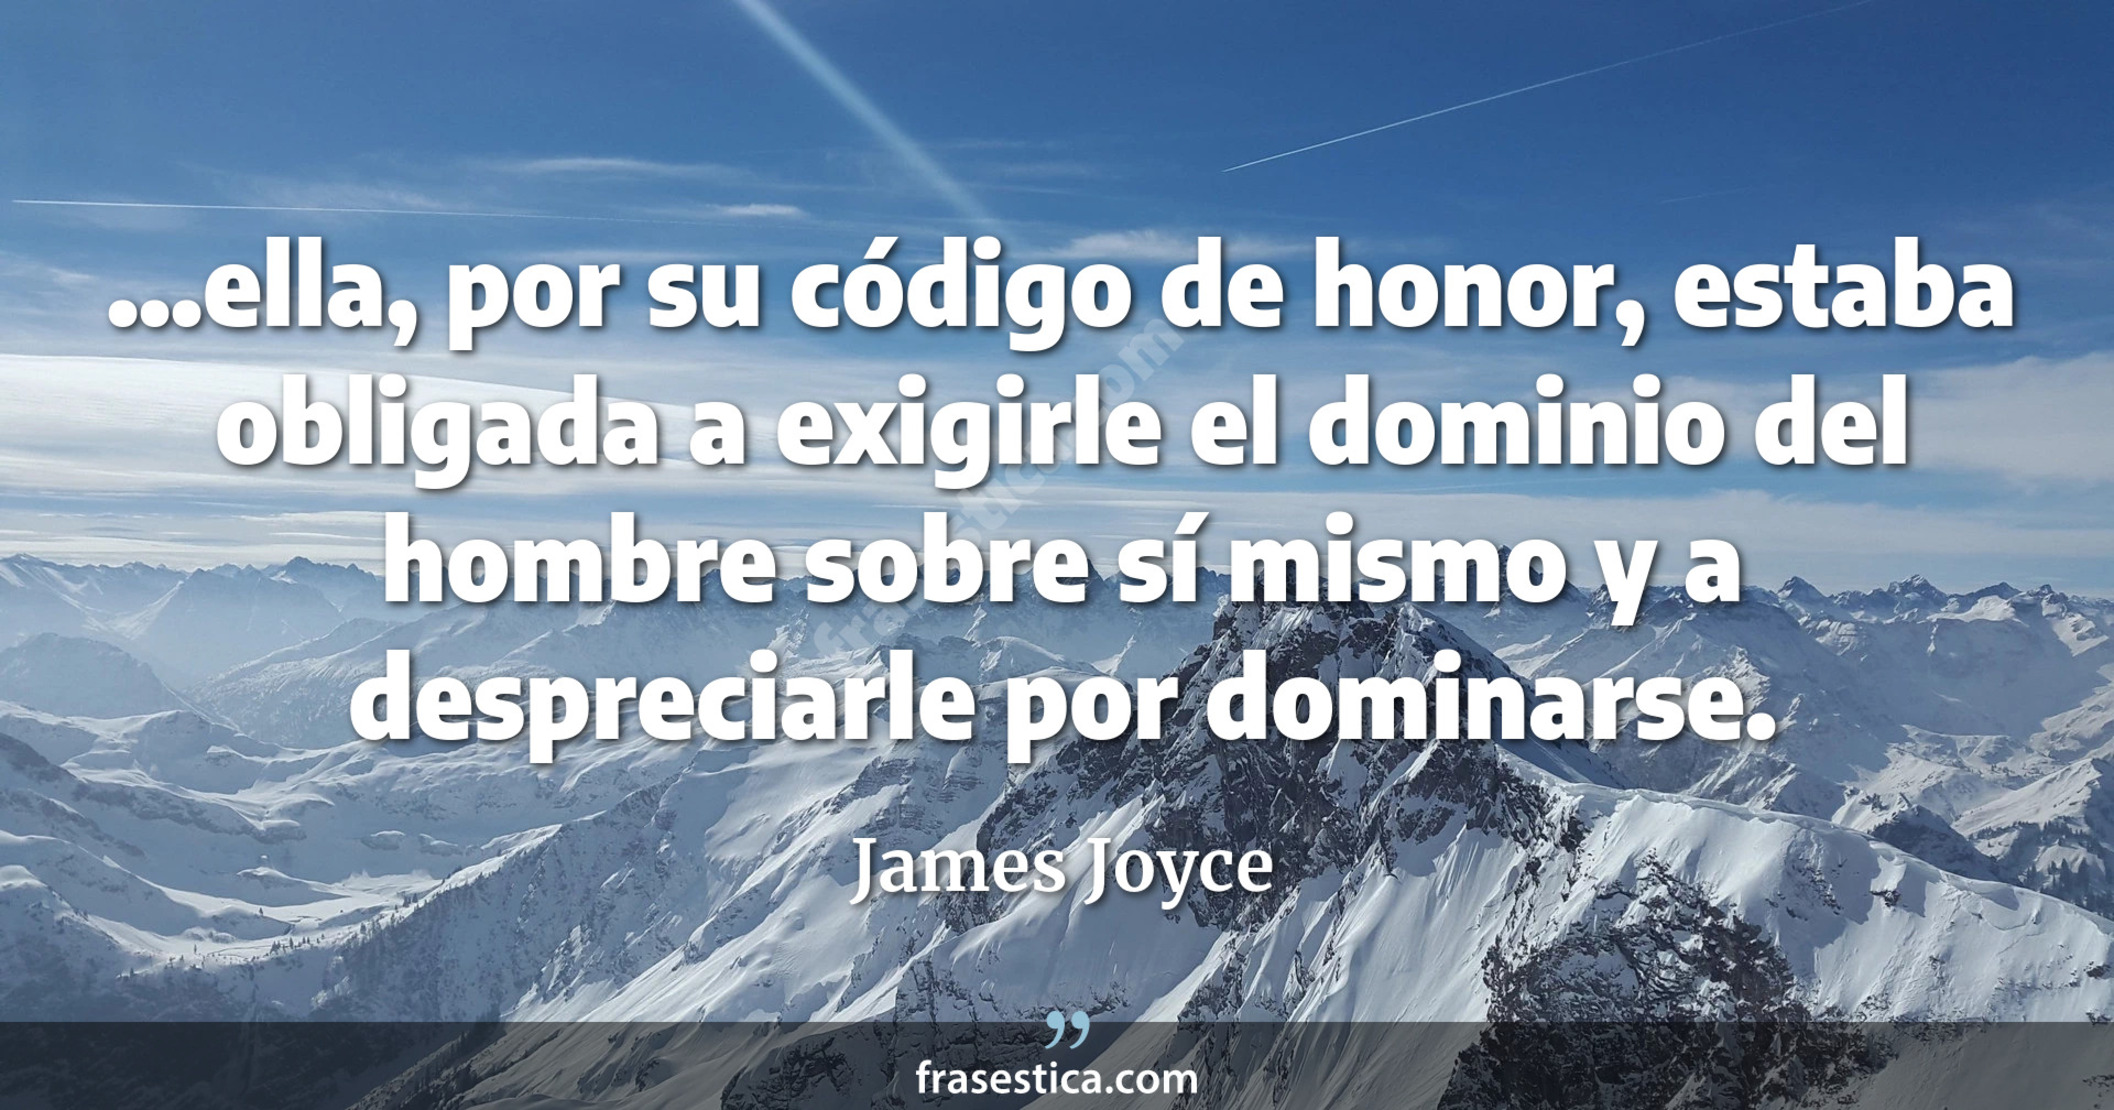 ...ella, por su código de honor, estaba obligada a exigirle el dominio del hombre sobre sí mismo y a despreciarle por dominarse. - James Joyce